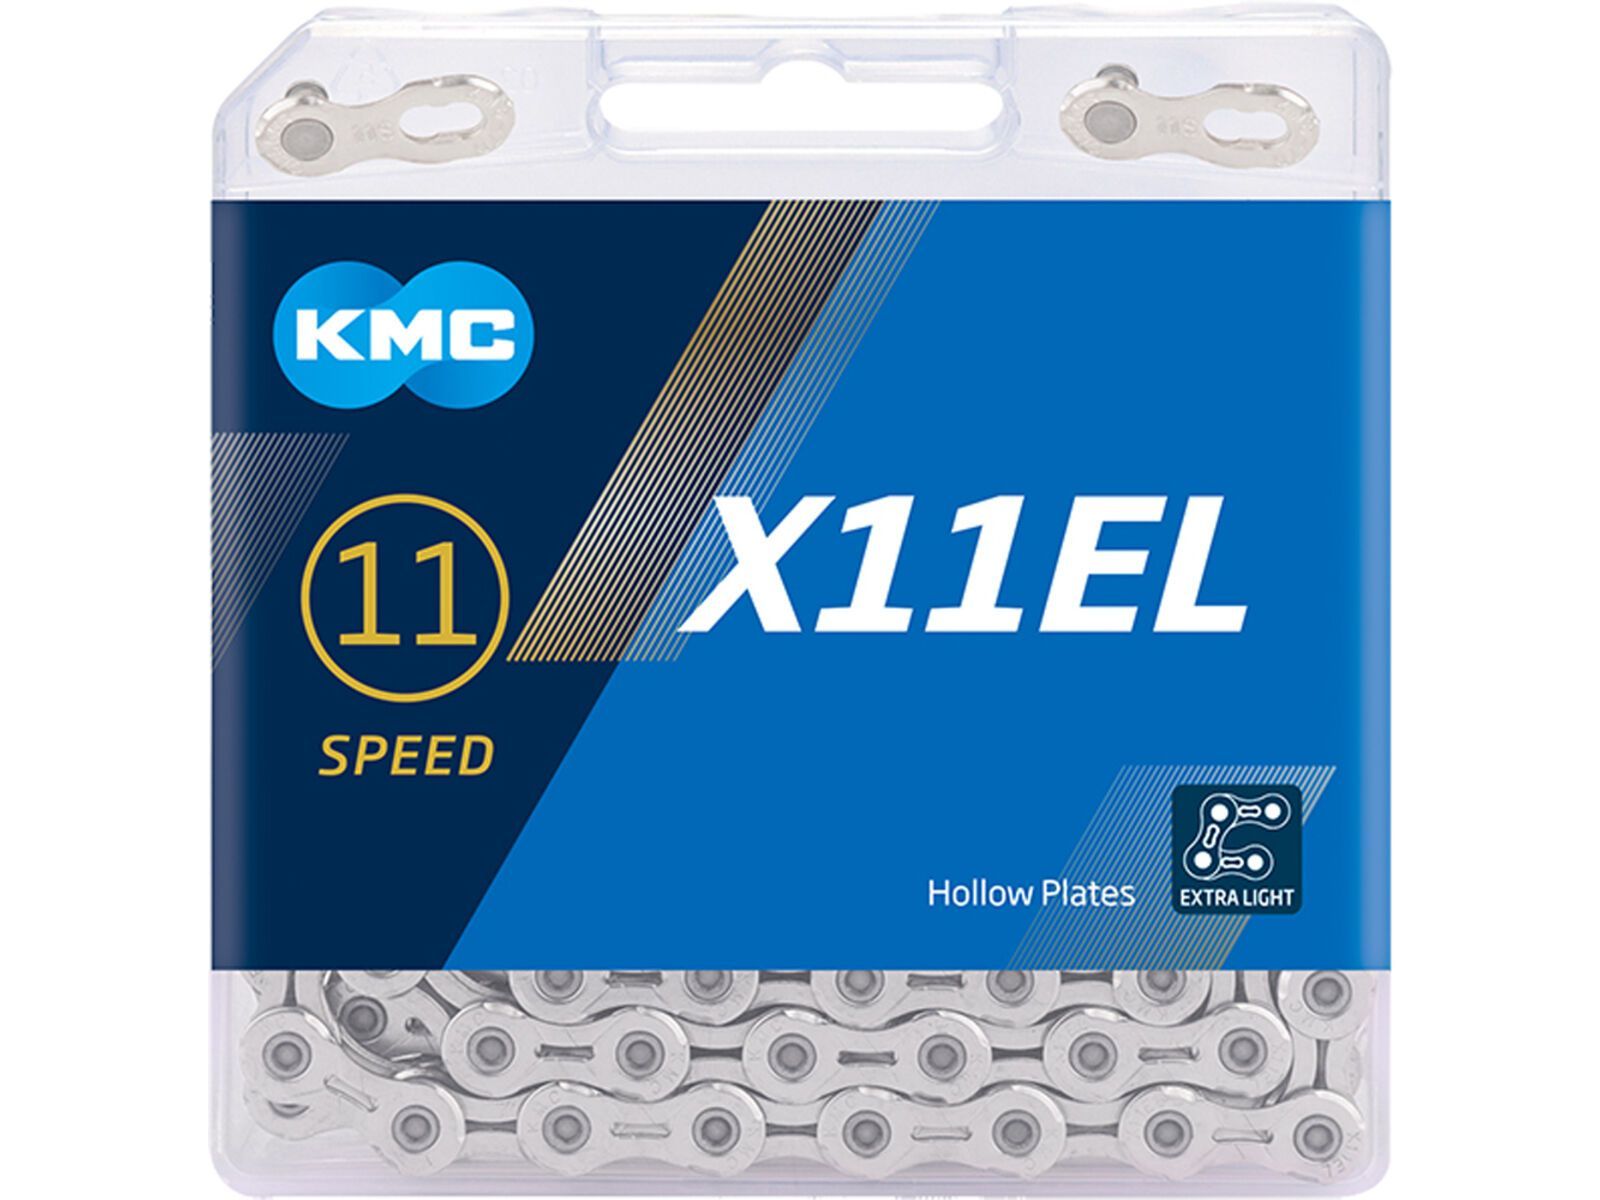 KMC X11EL - 11-fach, 118 Glieder, silver | Bild 2